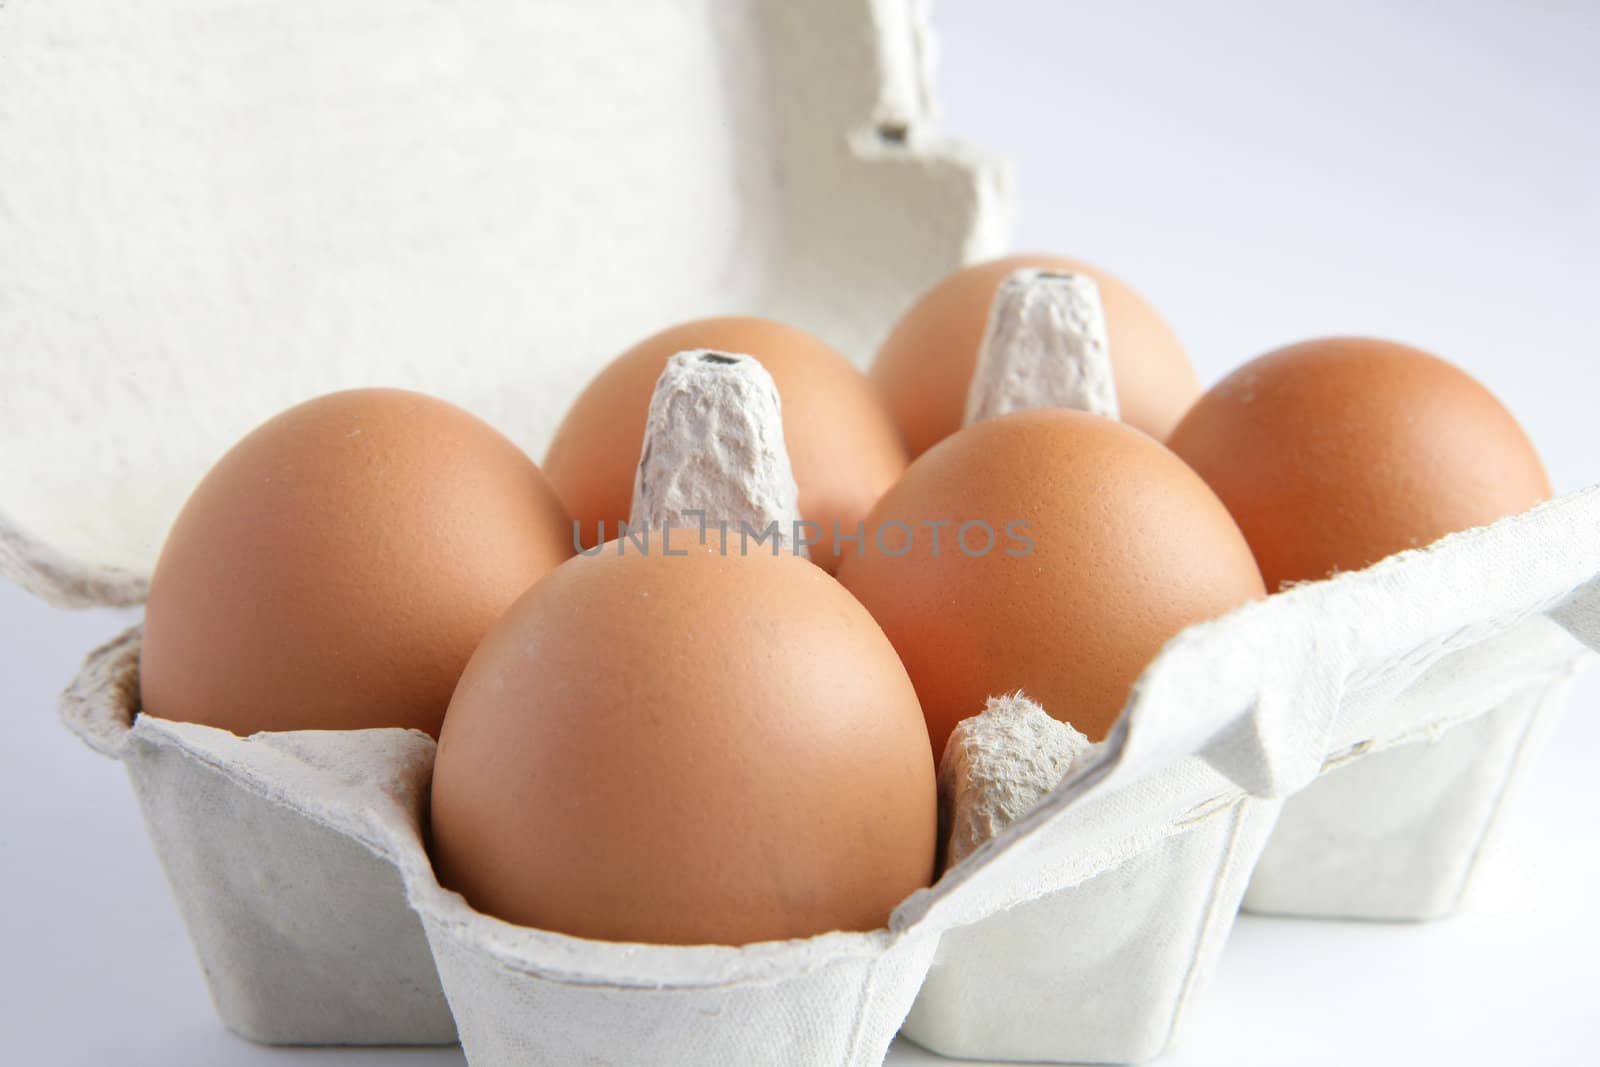 Half a dozen eggs by phovoir